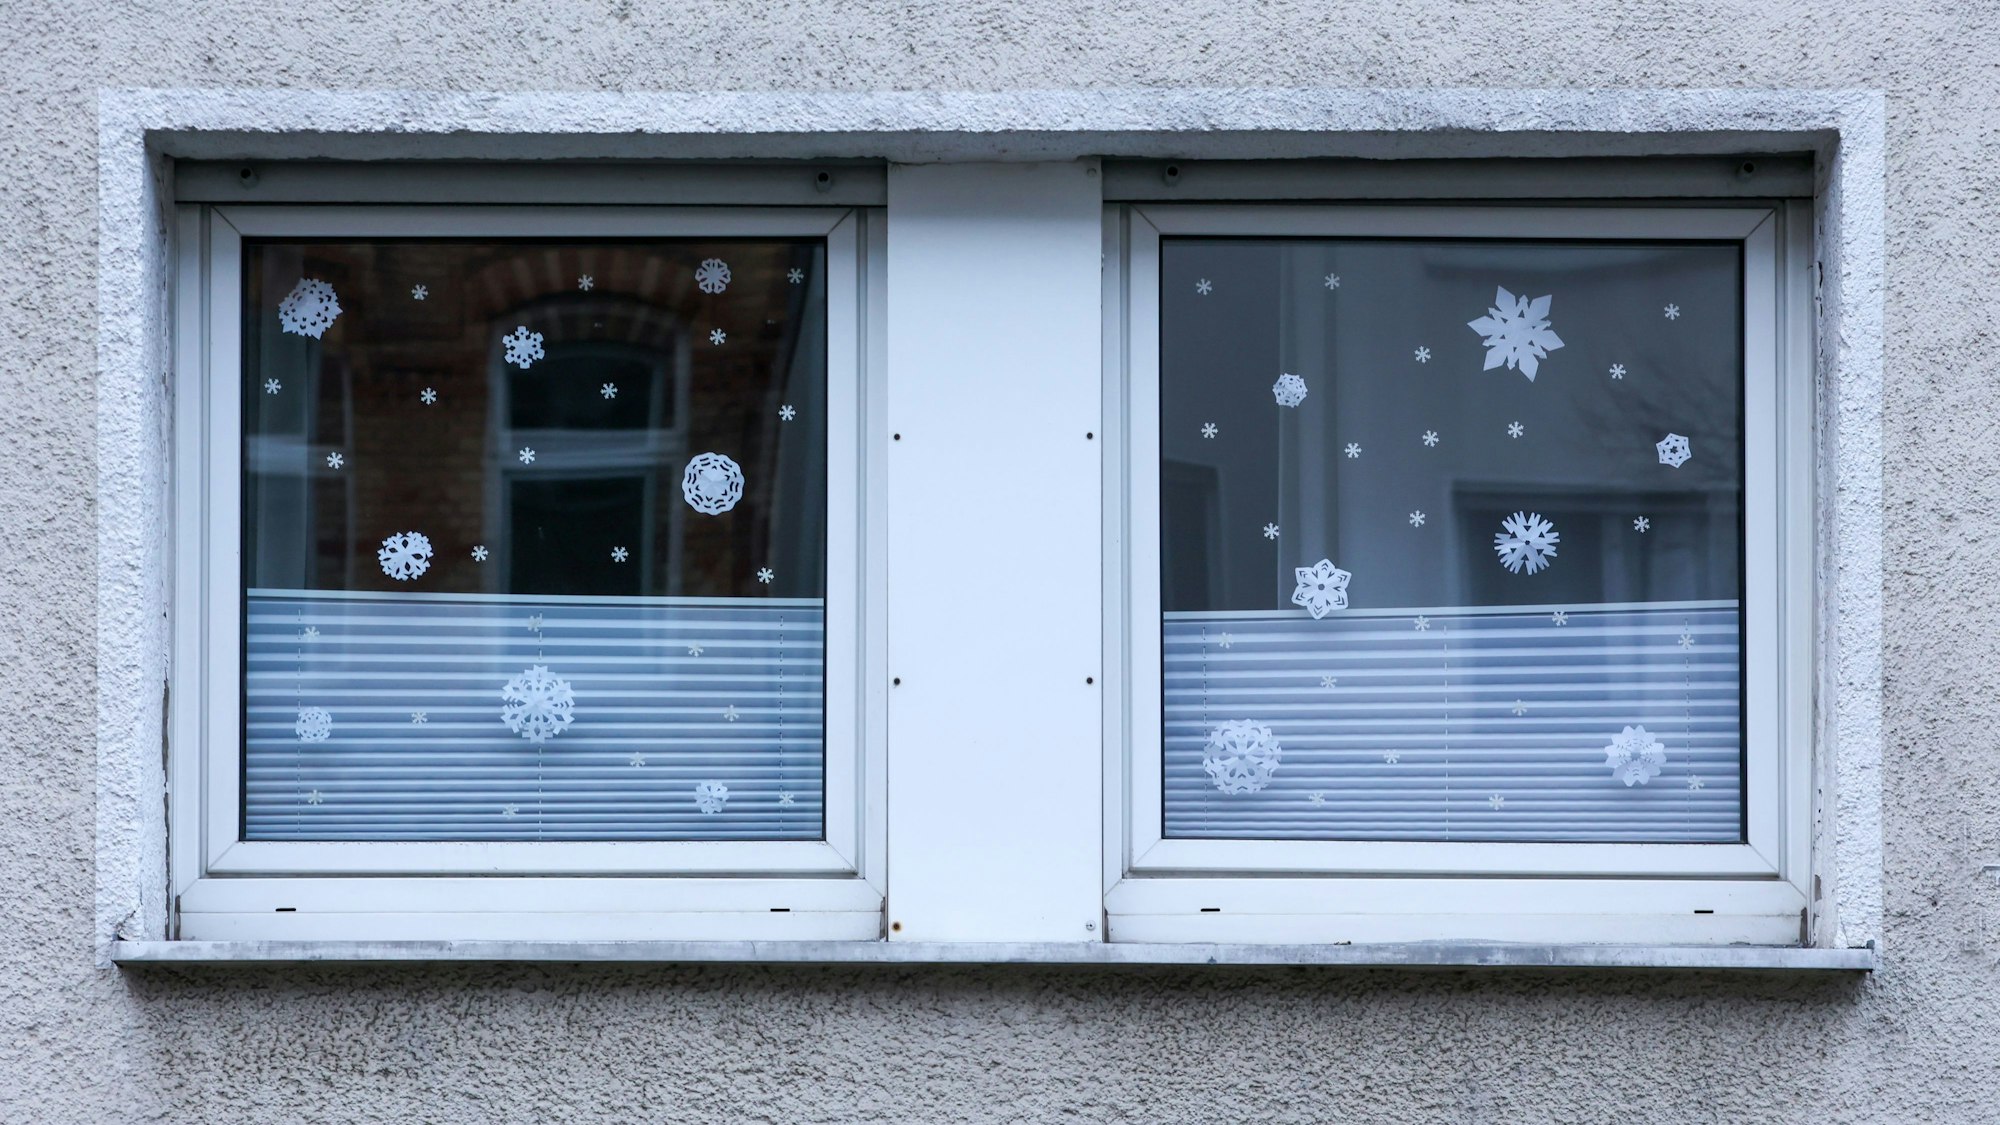 Morgens um acht lässt der Schnee in Köln noch auf sich warten und findet sich lediglich als Papierflocken am Fenster.